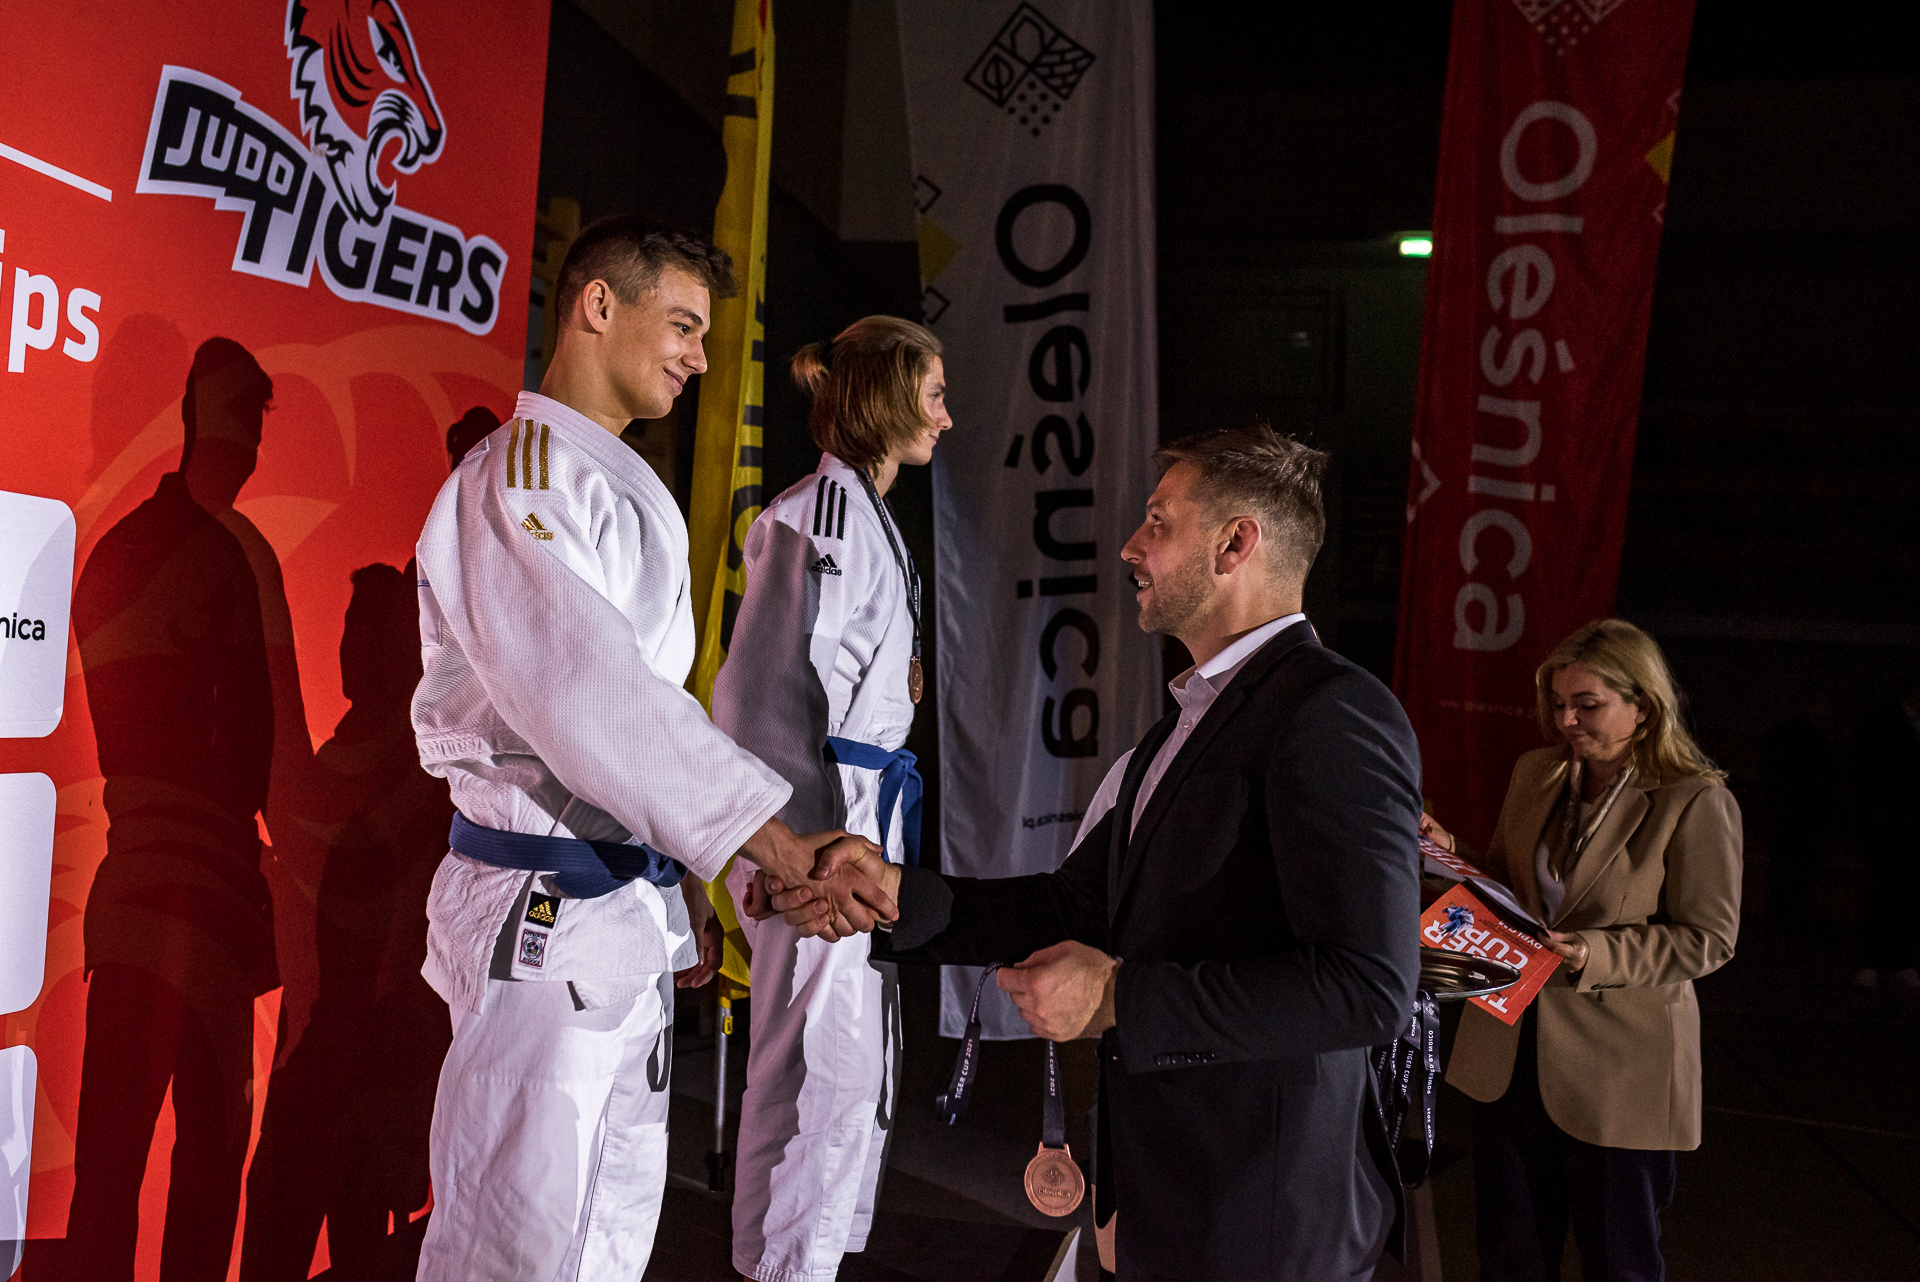 Tiger Cup 2021. Michał Zamęcki (prezes KS Judo Tigers) dekoruje swojego wychowanka na podium kategorii do 60 kg (Mikołaj Szopa).